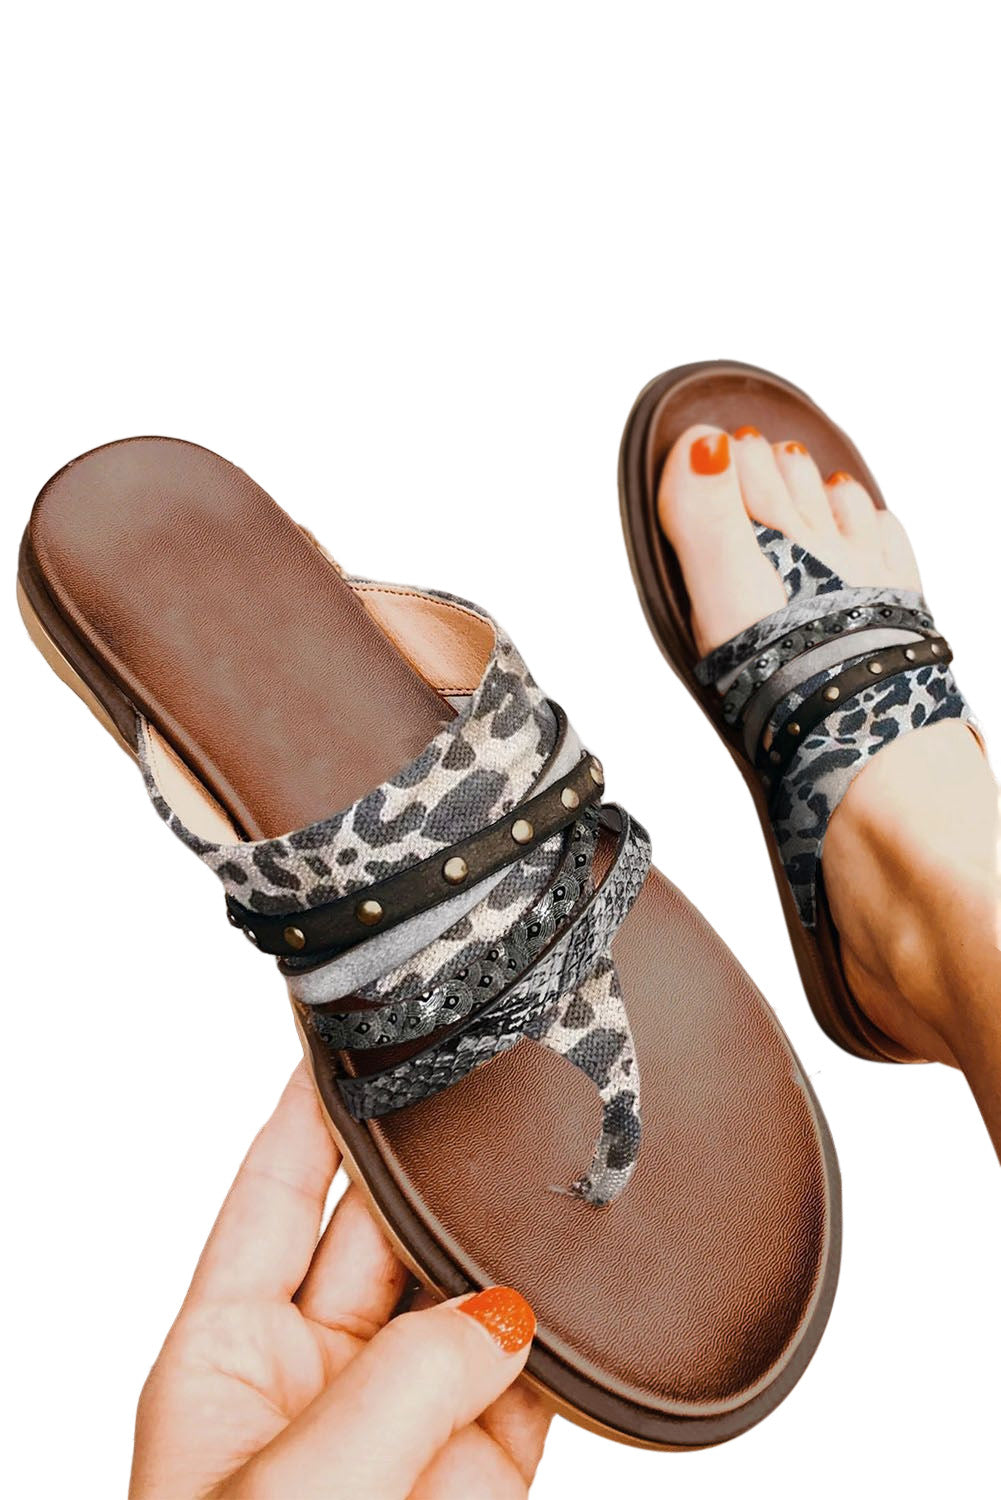 Leopard Studded Animal Print Flip Flop Sandals